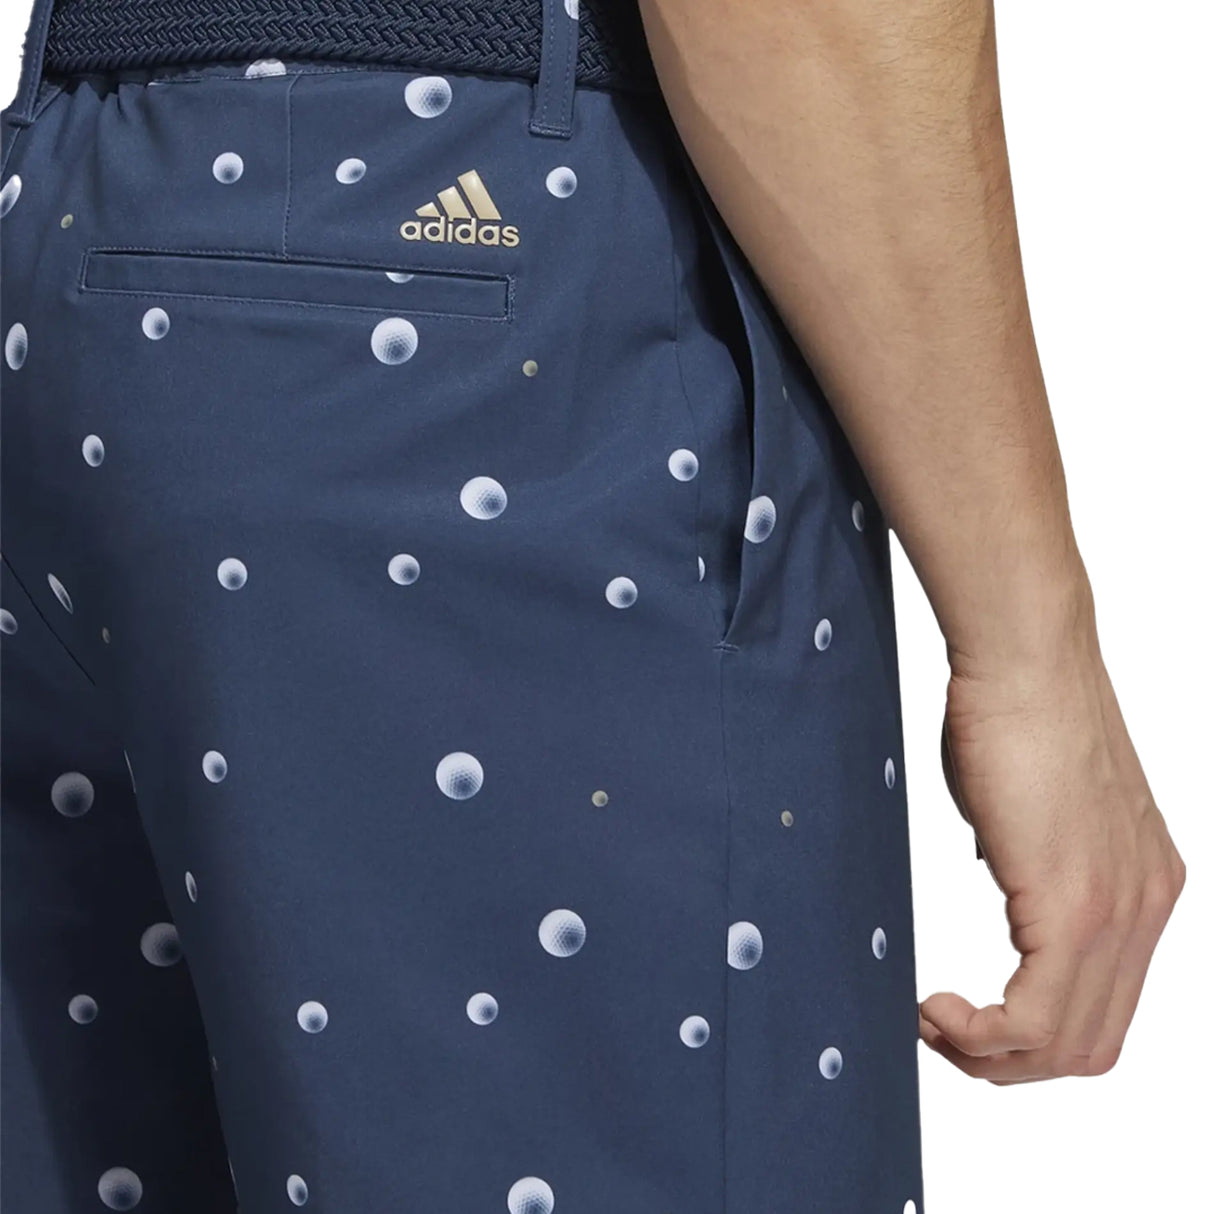 Adidas ULT Print 9 Inch Inseam Golf Shorts